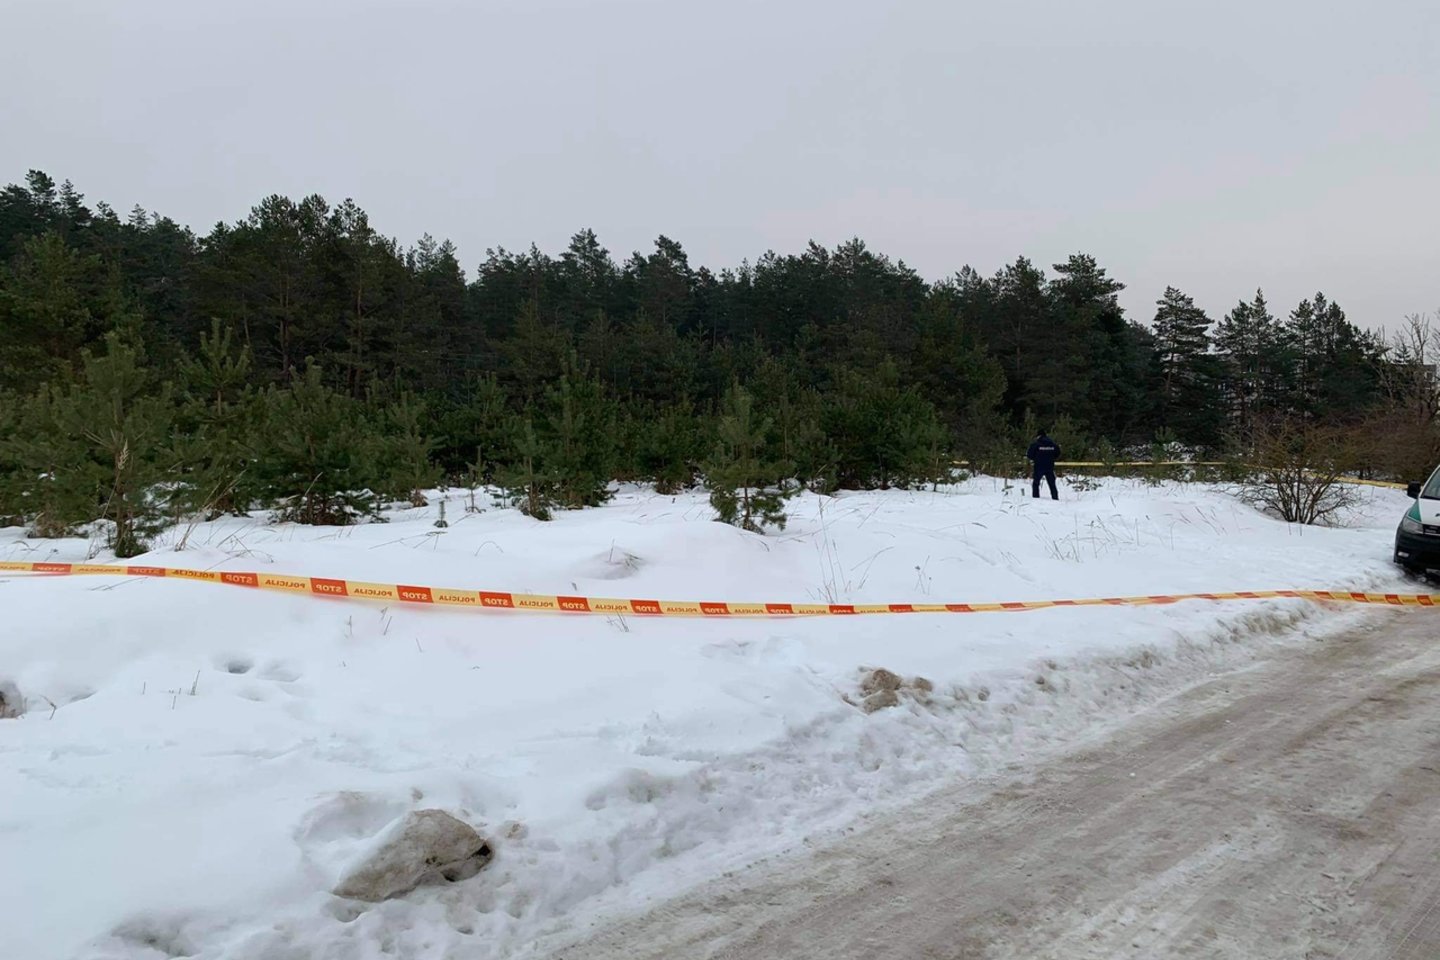  Dingusio Utenos savivaldybės administracijos direktoriaus kūnas rastas parke.<br> Š.Dvarecko nuotr.